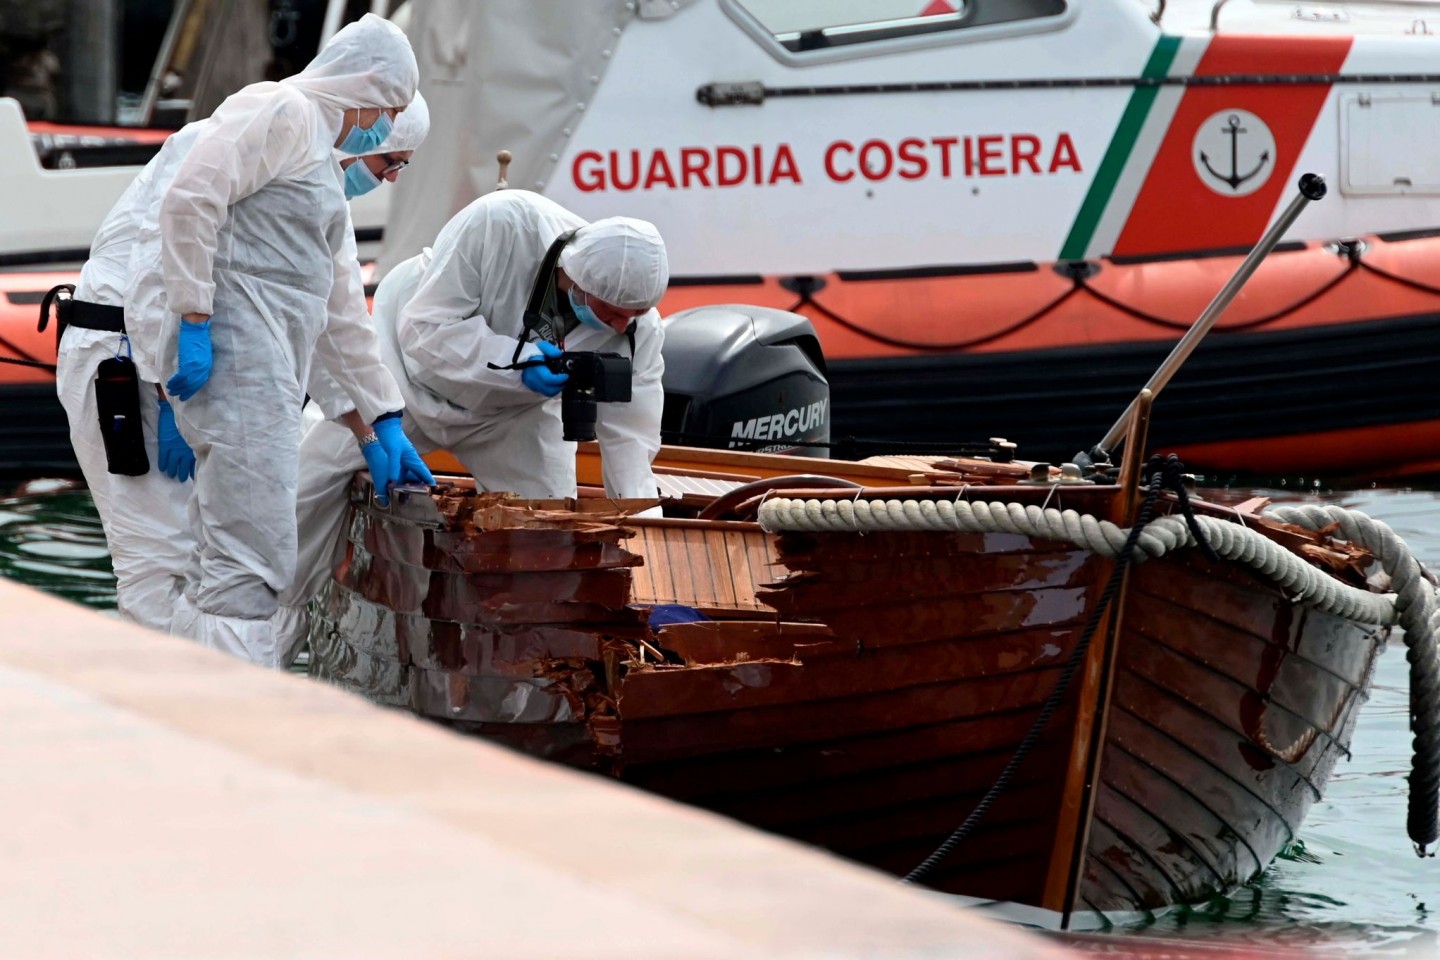 Italienische Forensiker begutachten die Schäden am Unfallboot in Salo am Gardasee.